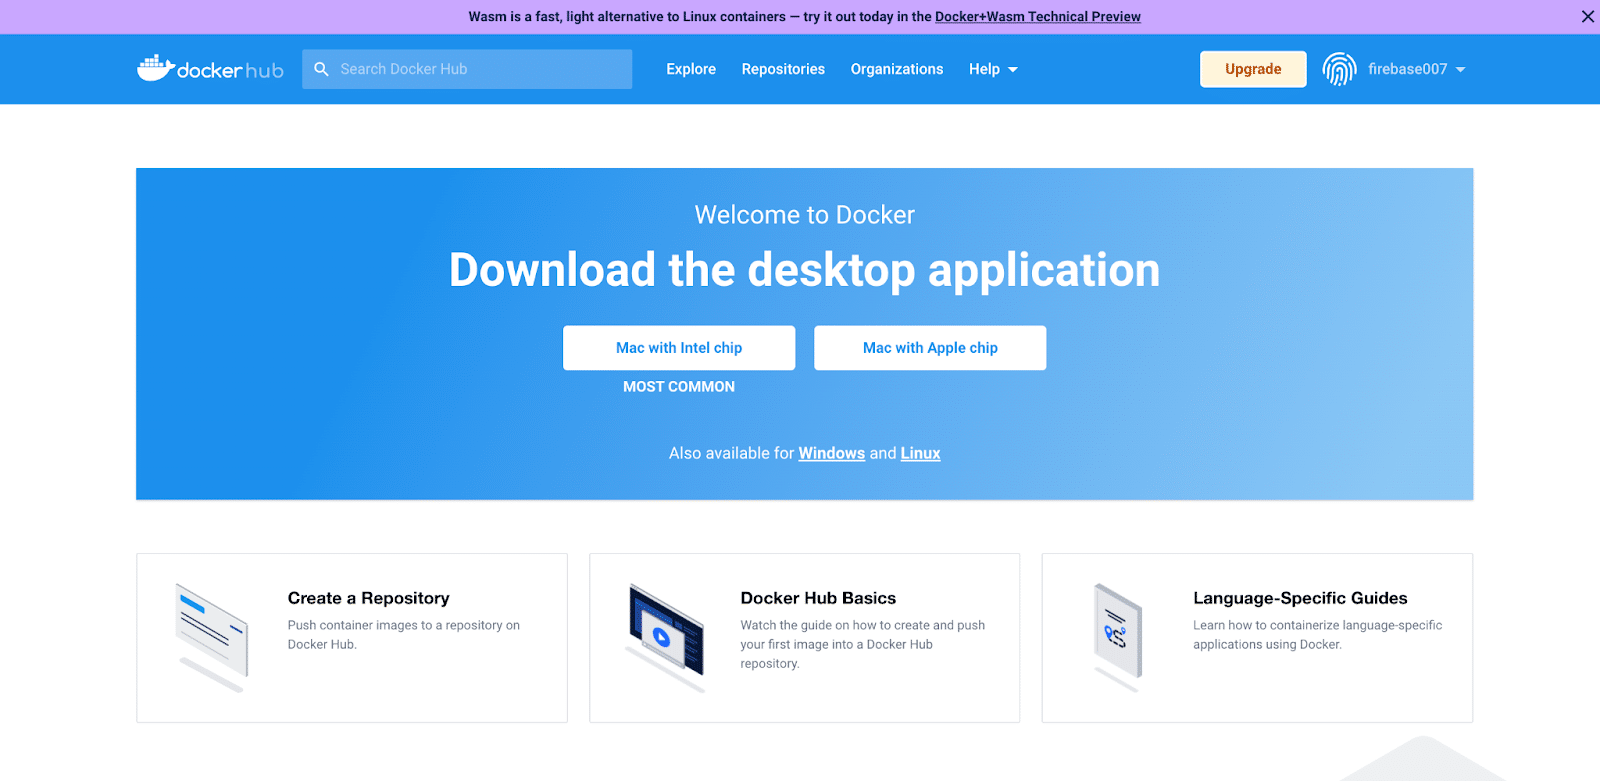 Downloadseite für Docker Desktop mit Optionen für verschiedene Betriebssysteme.